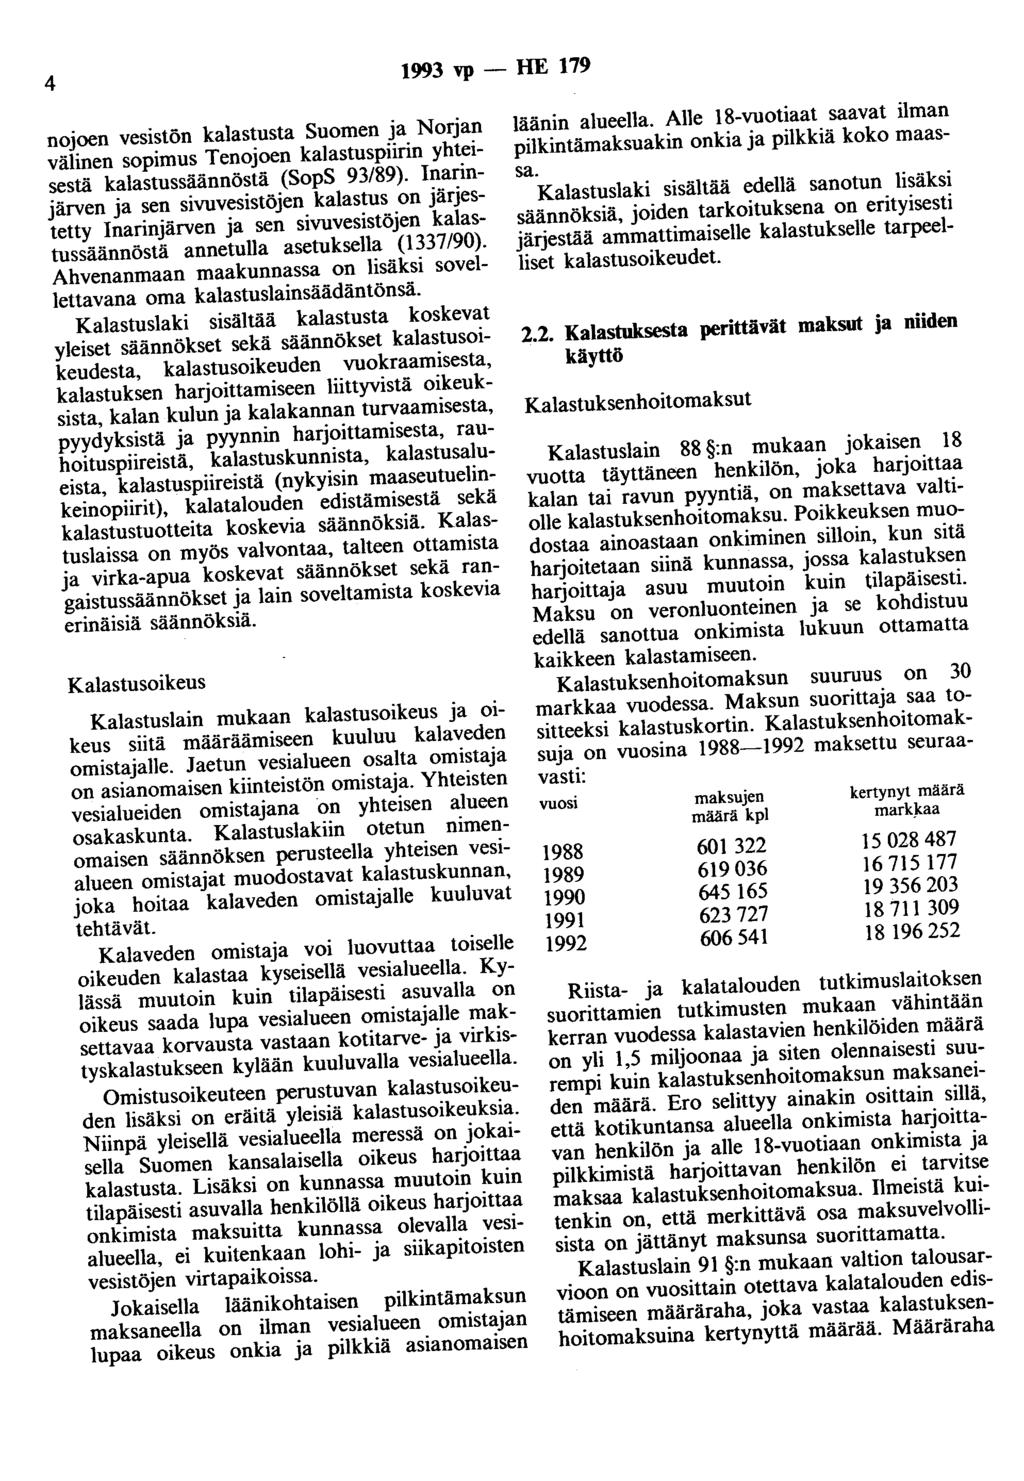 4 1993 vp - HE 179 nojoen vesistön kalastusta Suomen ja Norjan välinen sopimus Tenojoen kalastuspiirin yhteisestä kalastussäännöstä (SopS 93/89).